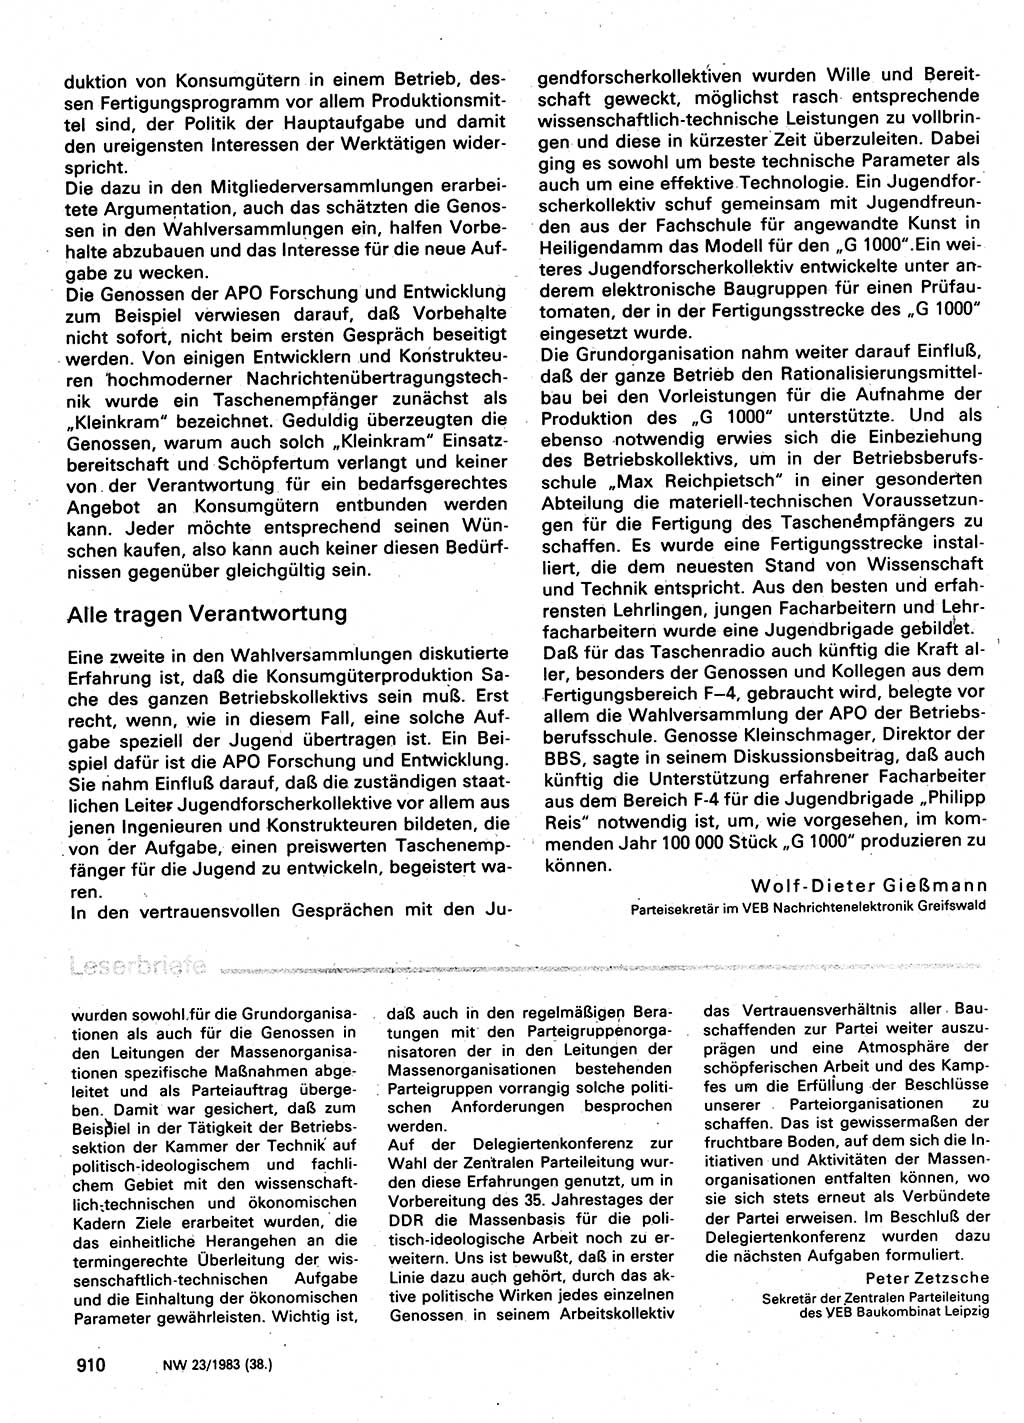 Neuer Weg (NW), Organ des Zentralkomitees (ZK) der SED (Sozialistische Einheitspartei Deutschlands) für Fragen des Parteilebens, 38. Jahrgang [Deutsche Demokratische Republik (DDR)] 1983, Seite 910 (NW ZK SED DDR 1983, S. 910)